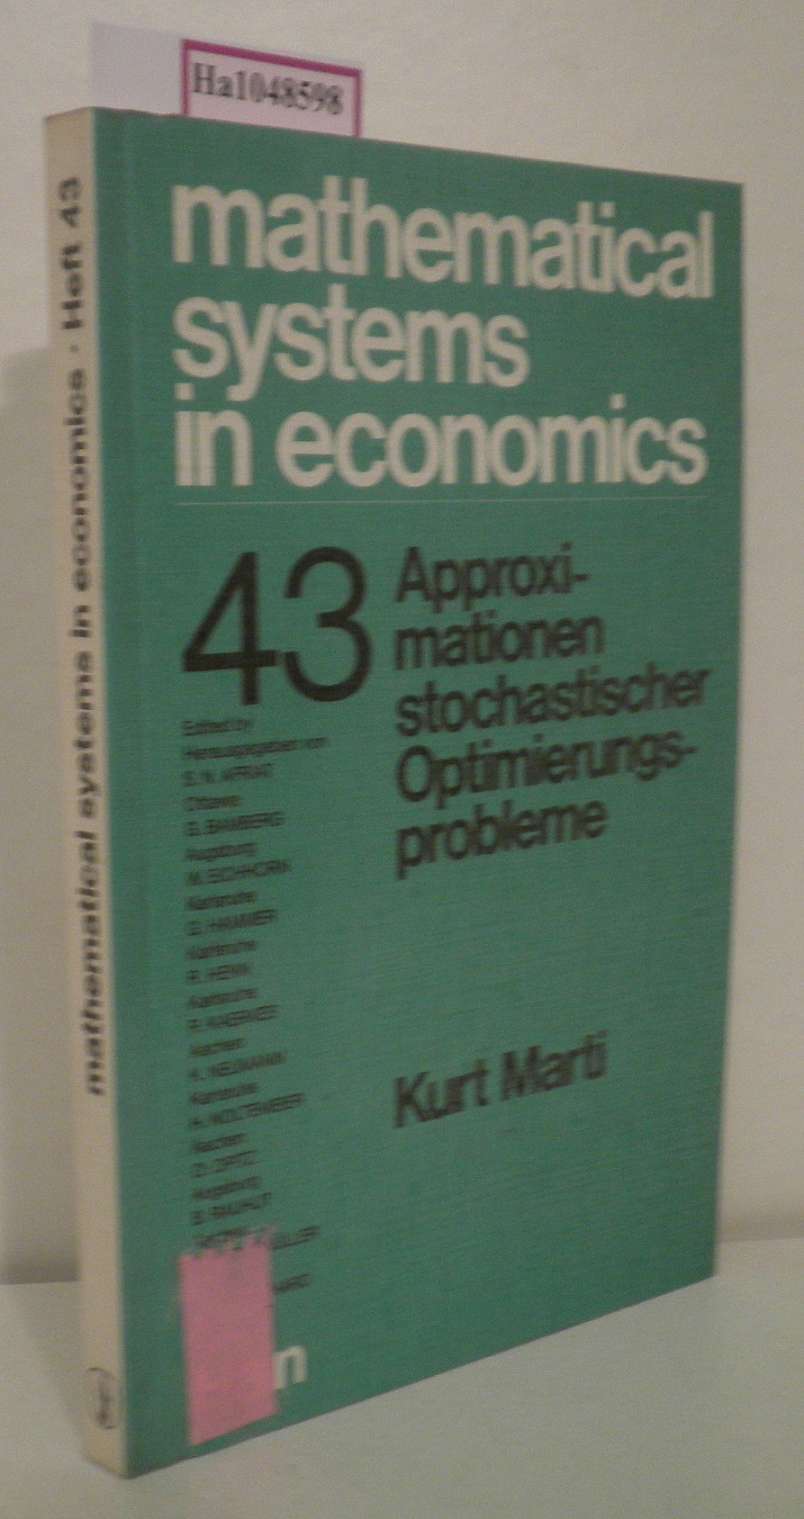 Approximationen stochastischer Optimierungsprobleme. (=Mathematical Systems in Economics 43). - Marti, Kurt